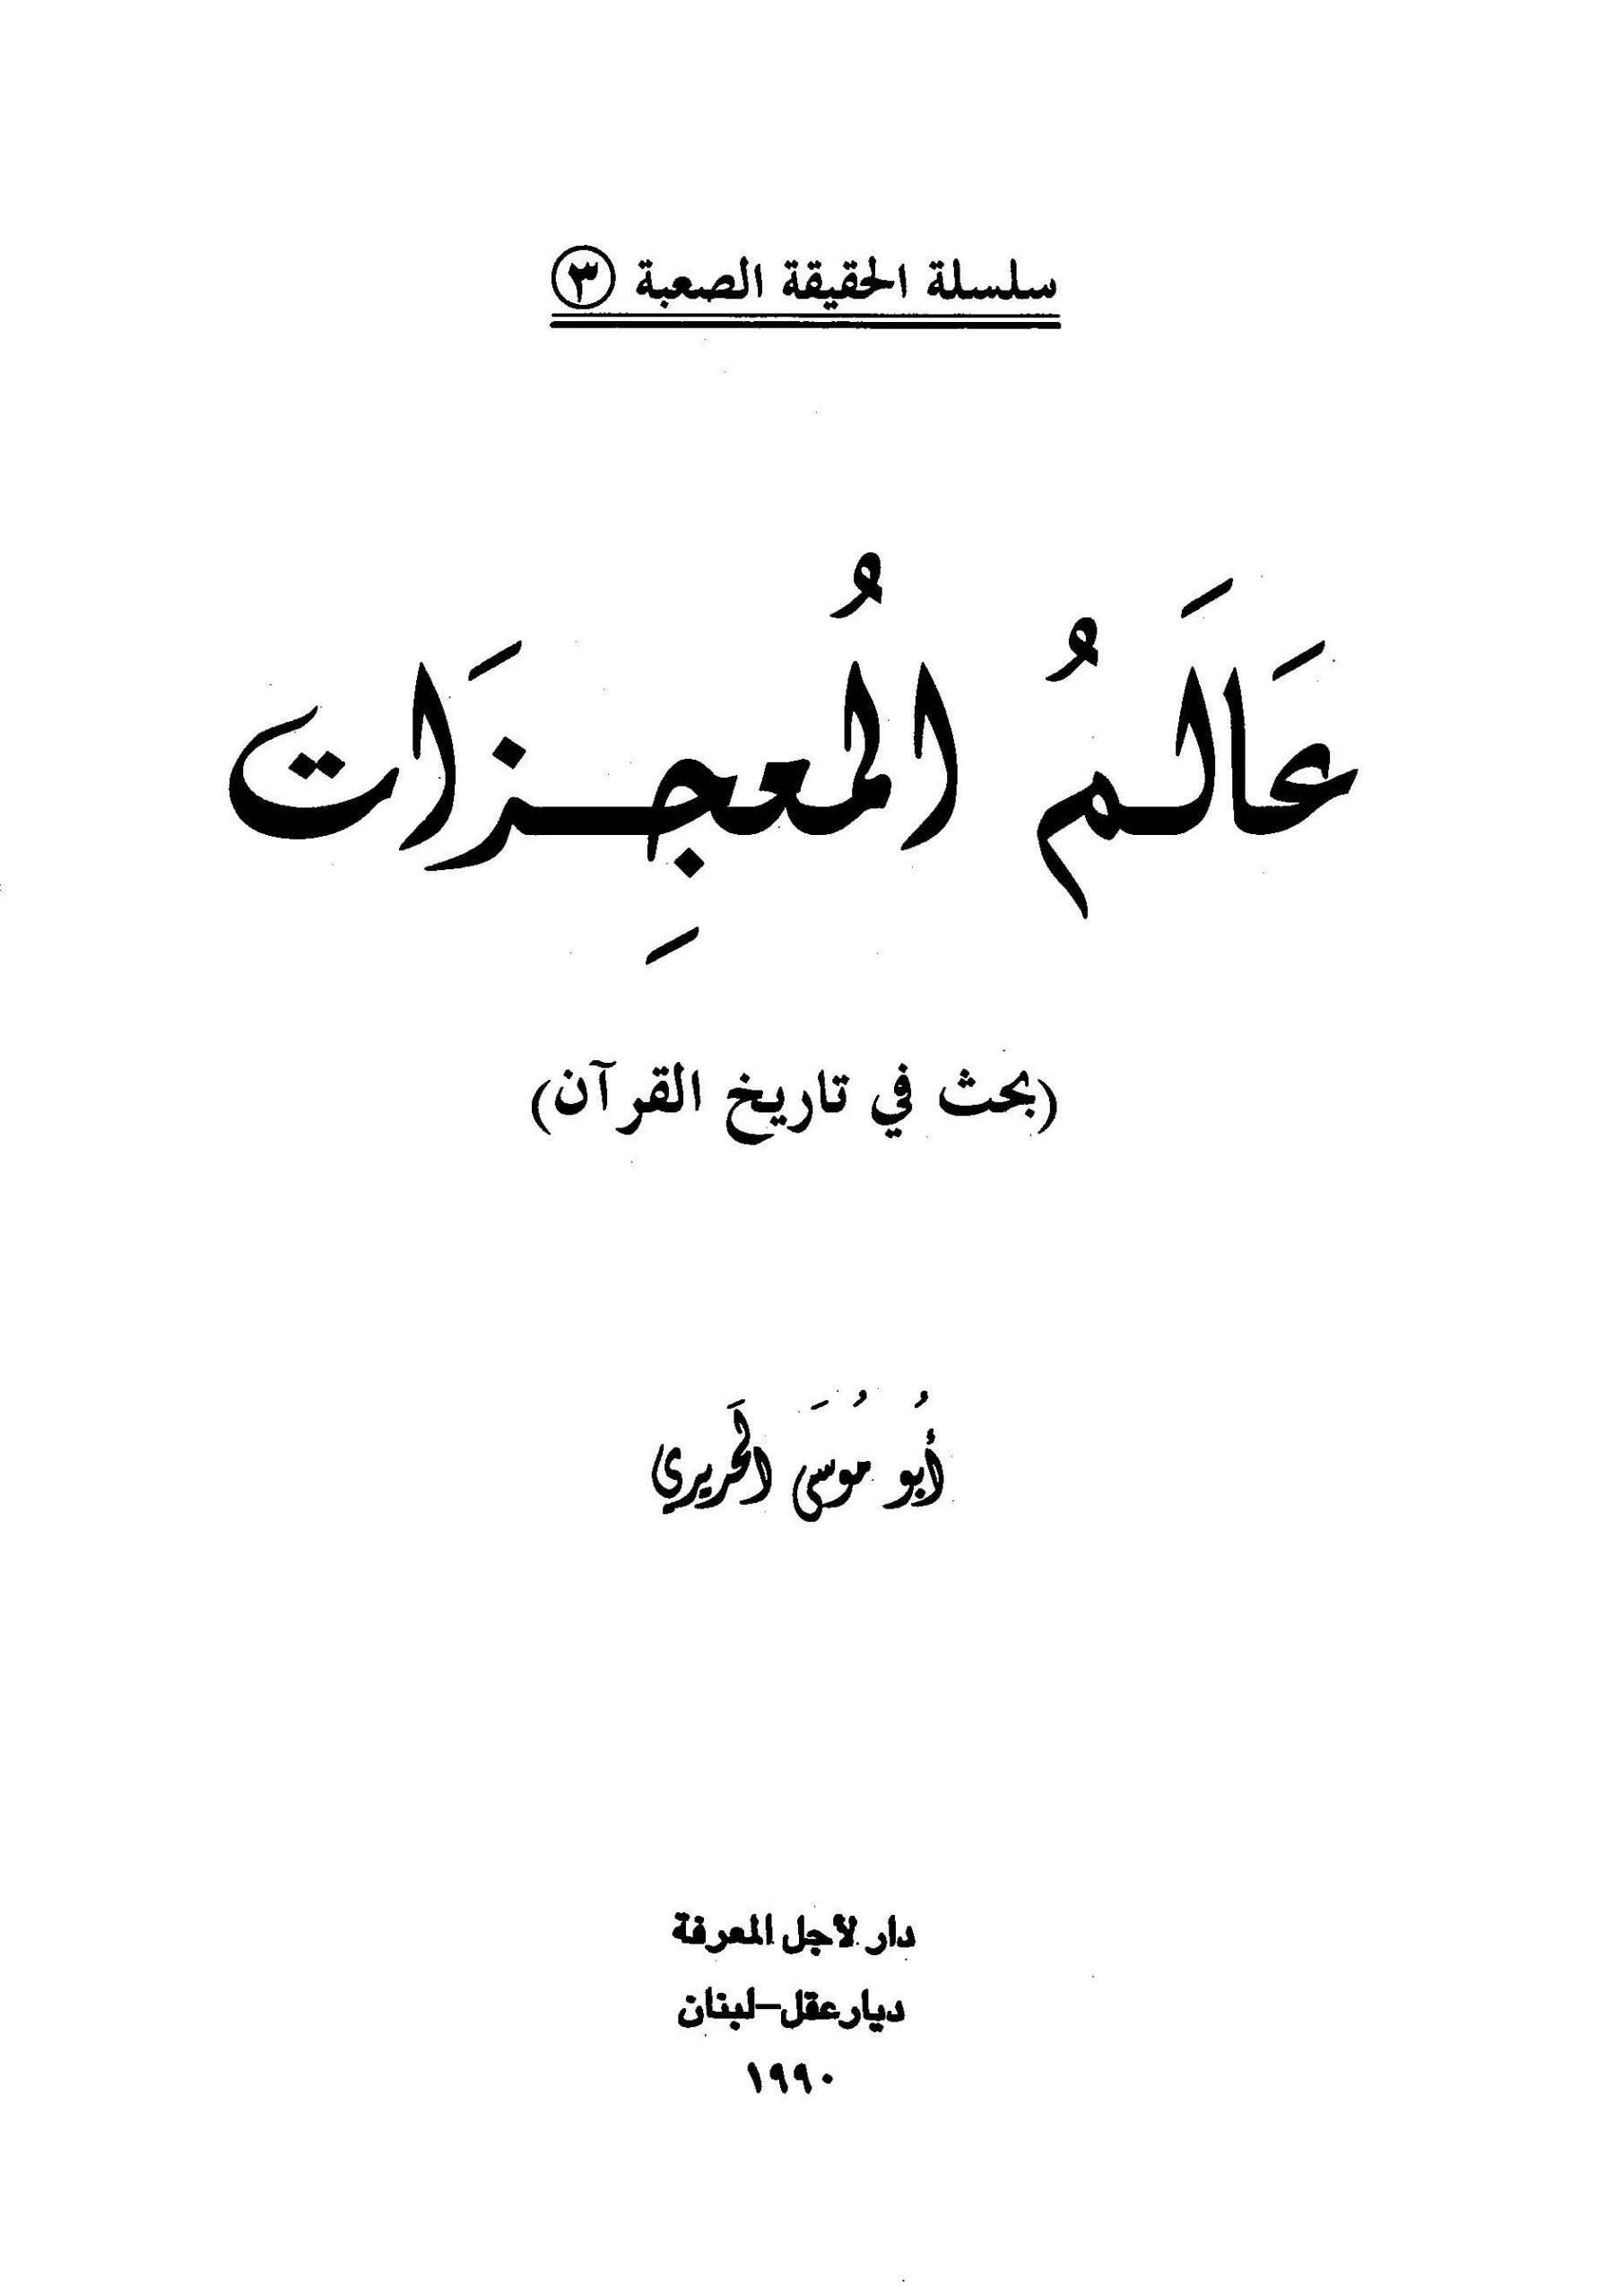 سلسلة الحقيقة الصعبة 3 - عالم المعجزات بحث في تاريخ القرآن  - أبو موسى الحريري